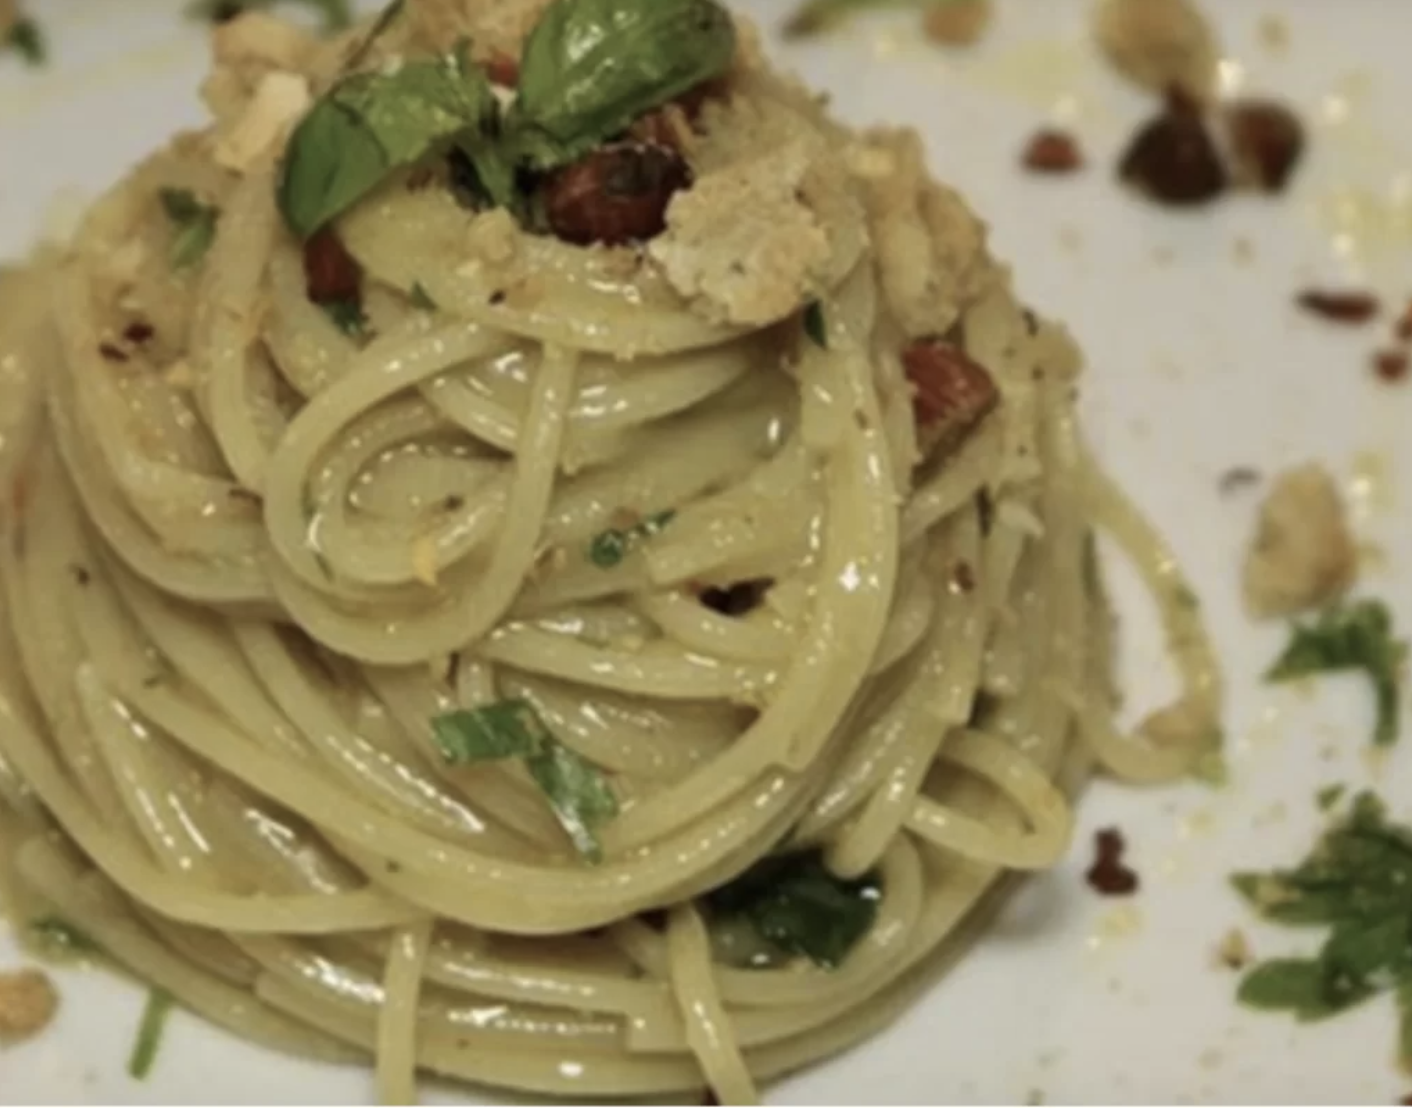 spaghetti-aglio-e-olio-alla-scientifica:-il-segreto-che-crea-dipendenza,-ne-basta-un-cucchiaino.-non-mangerete-piu-la-classica